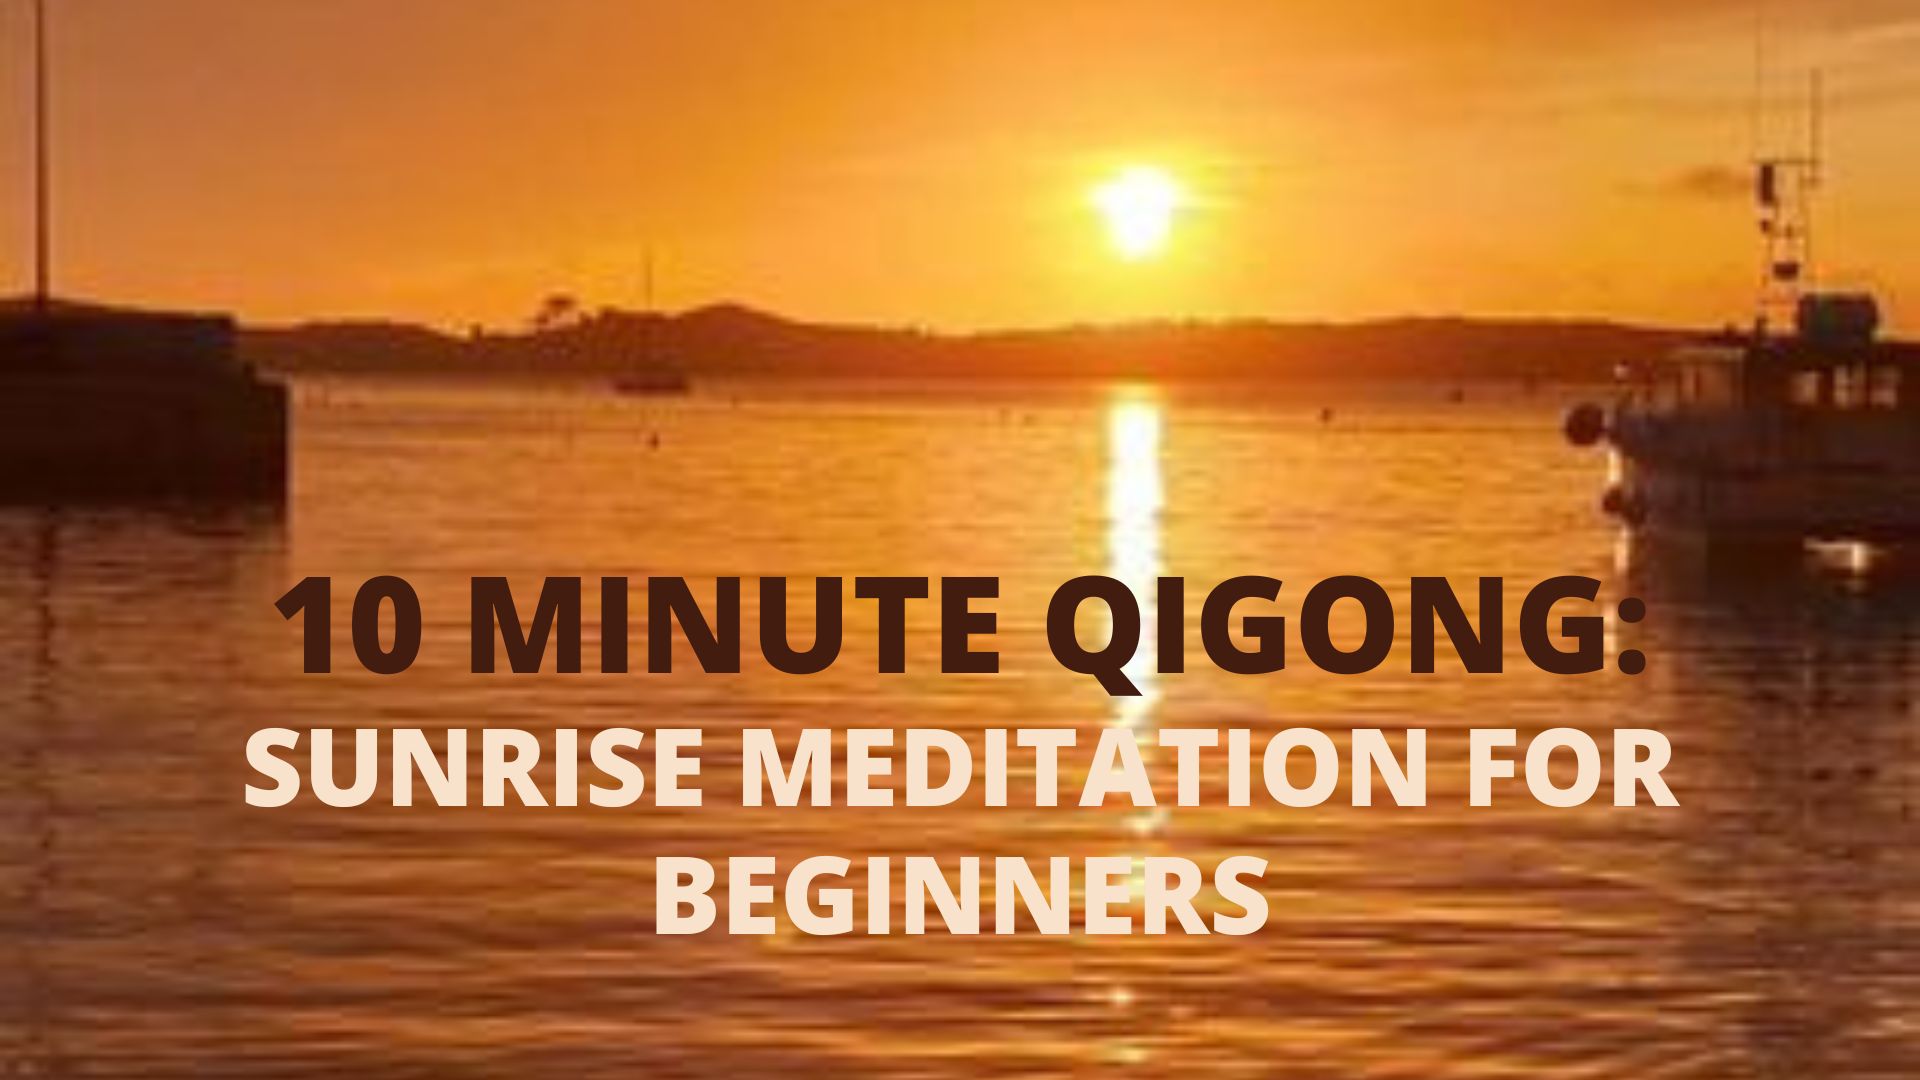 10 Minute Qigong Sunrise Meditation For Beginners